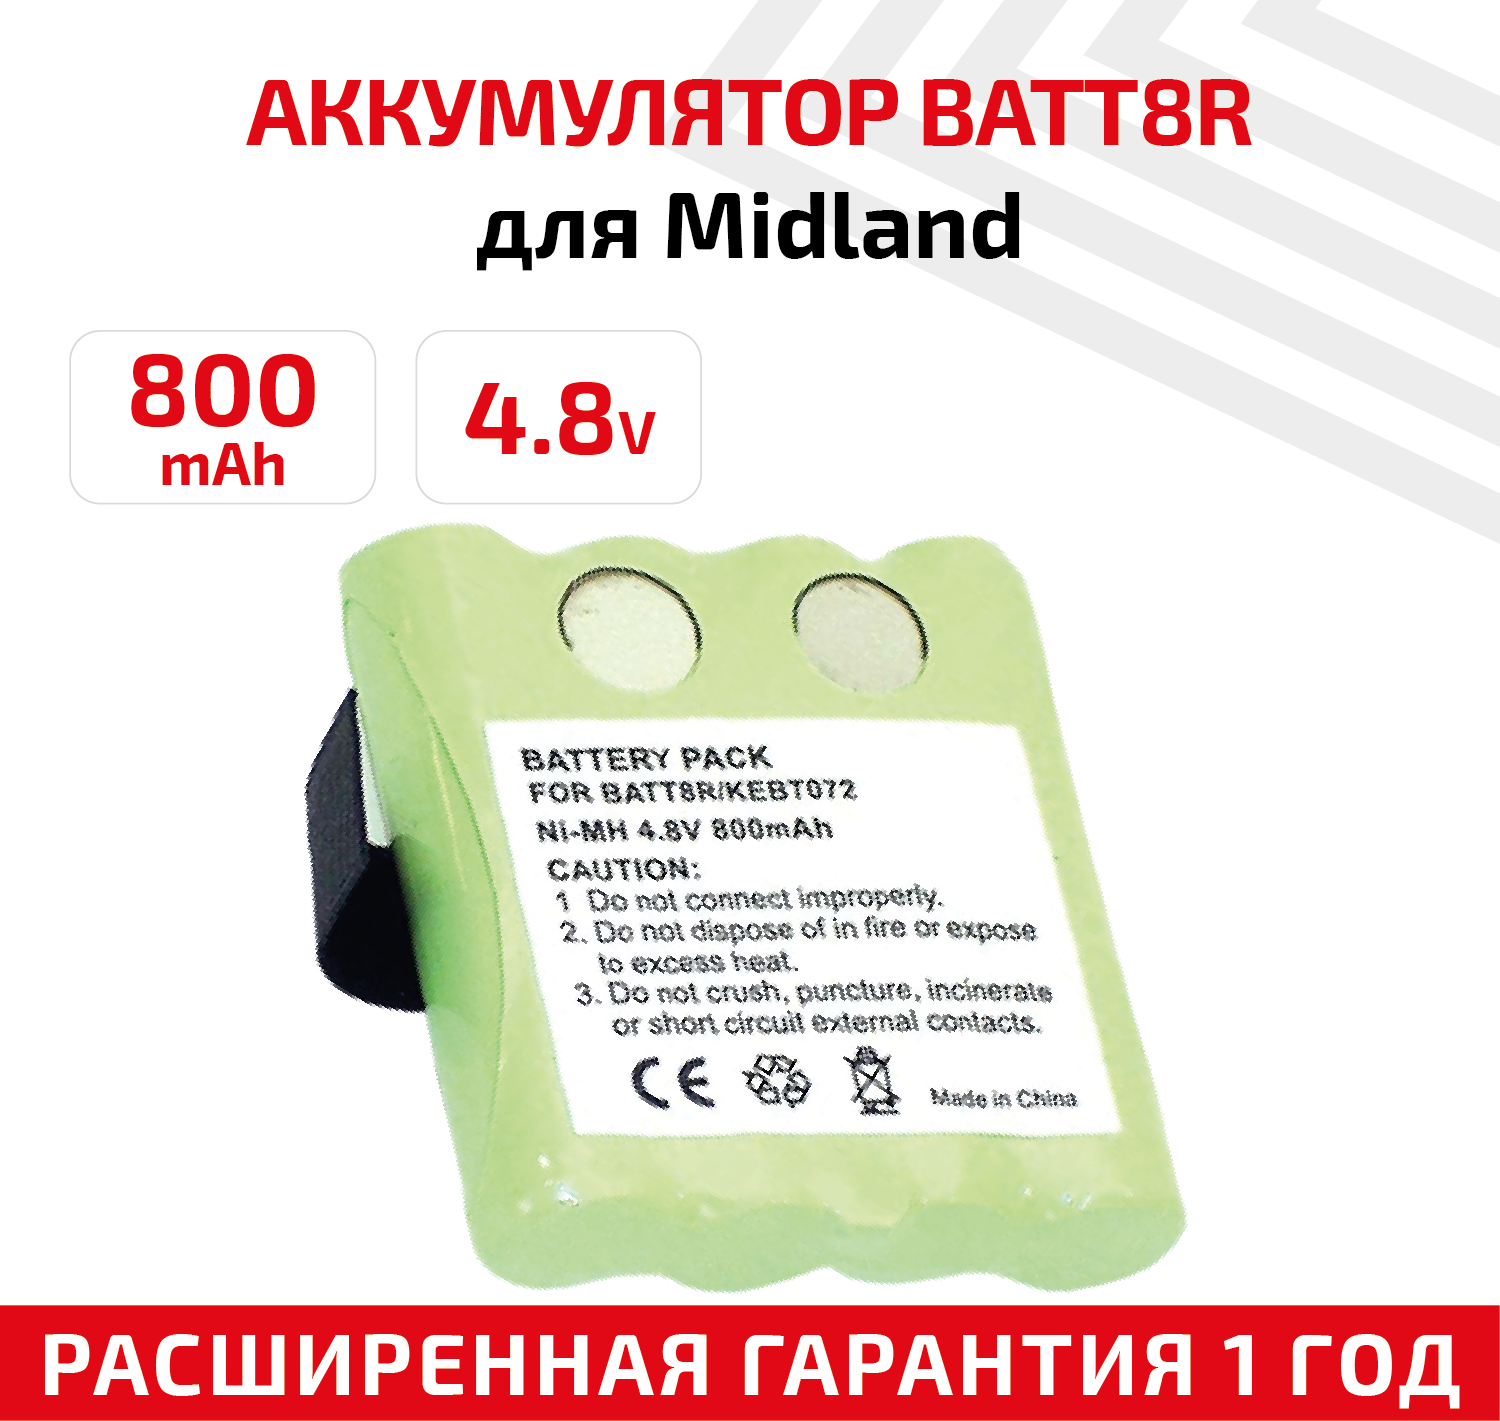 Аккумуляторная батарея (АКБ) BATT8R для рации (радиостанции) Midland LXT300, M370H1A, SX700R, TalkAbout FV700R, SX700, SX700R, 800мАч, 4.8В, Ni-Mh